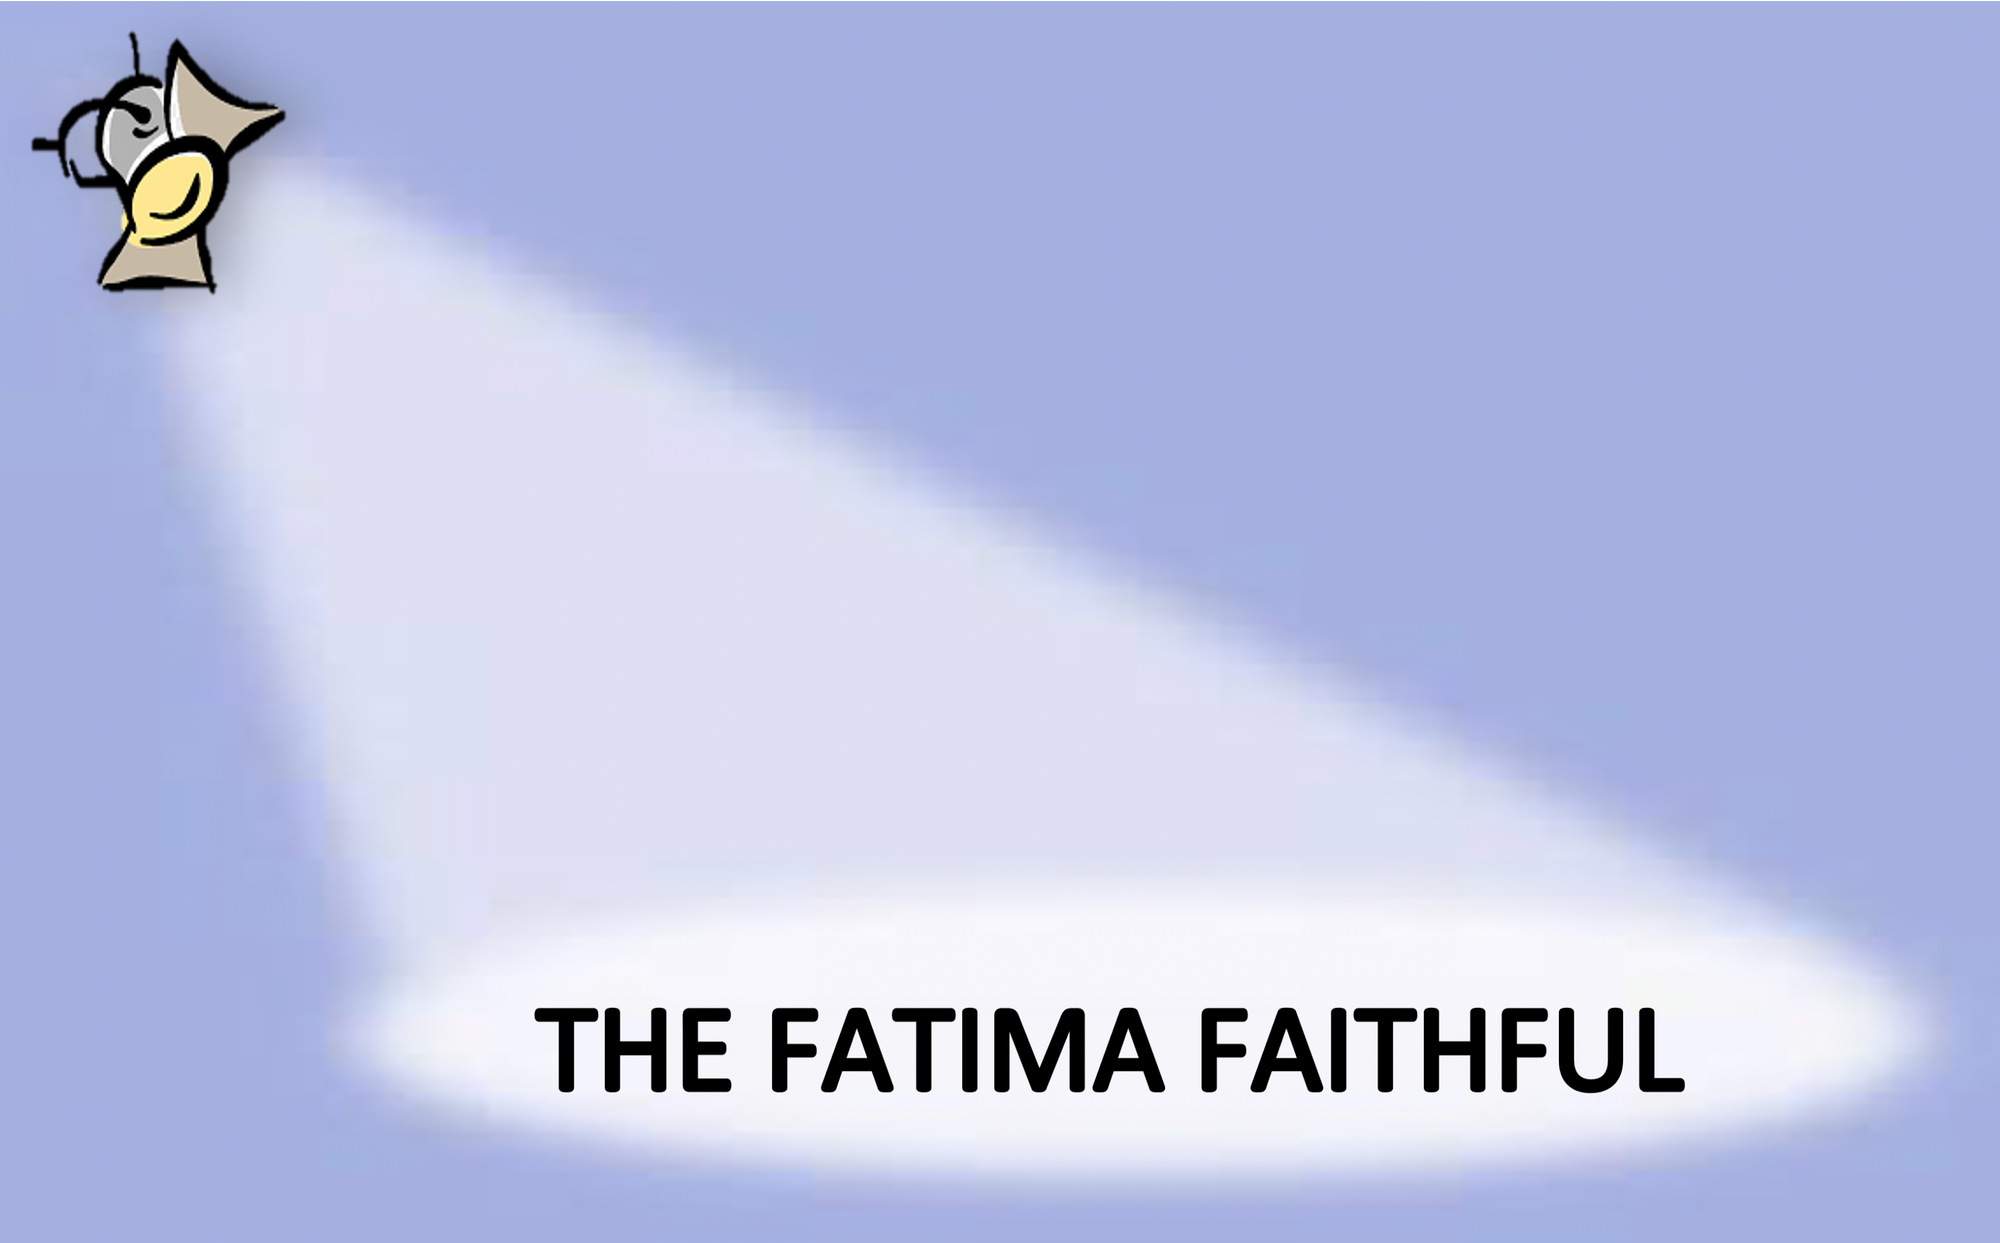 The Fatima Faithful for July 2022